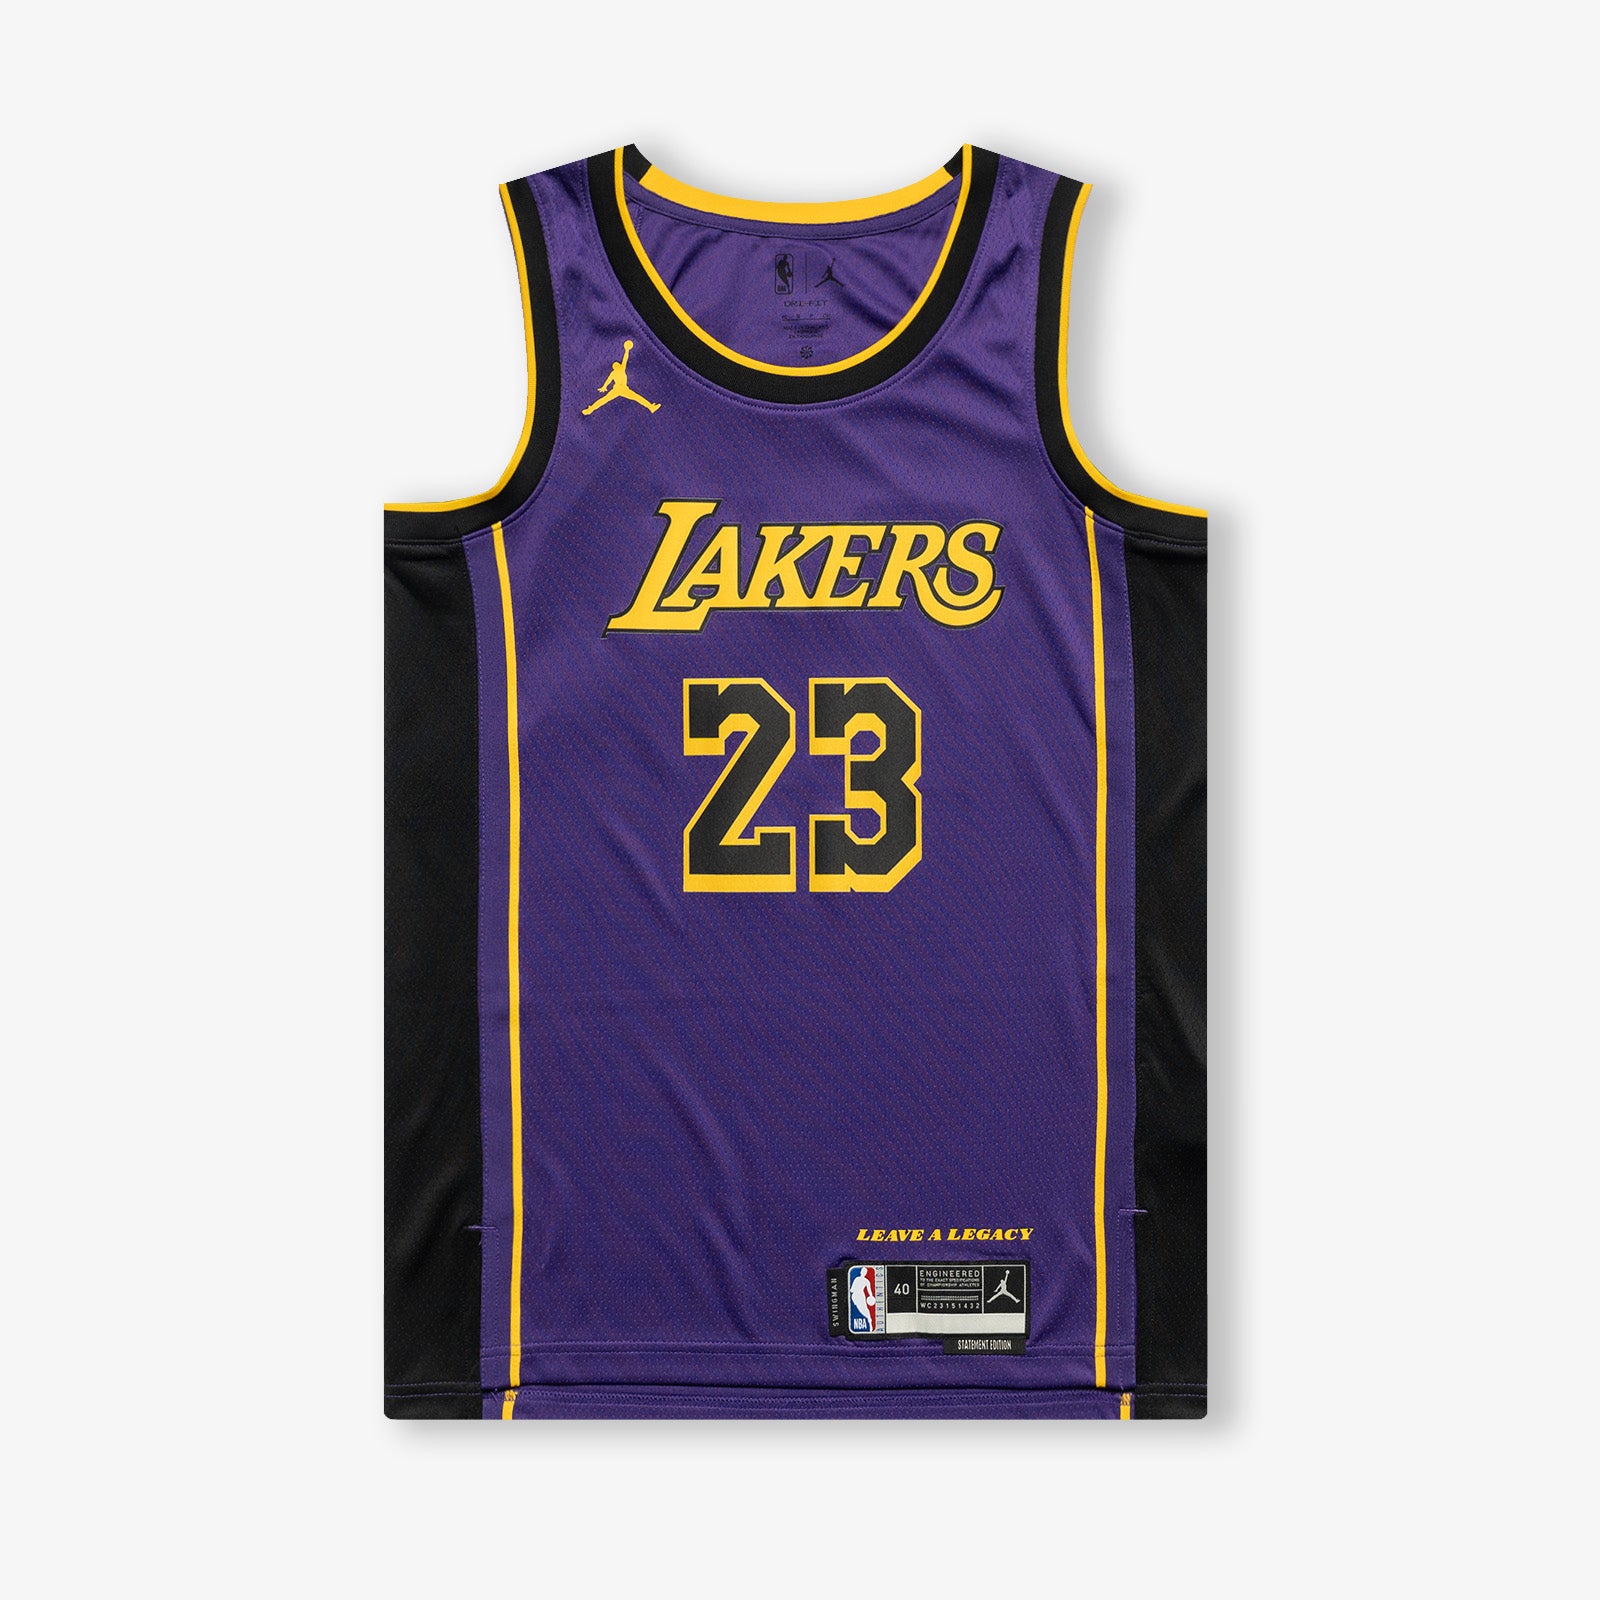 Men's Los Angeles Lakers Statement Edition Jordan Dri-Fit NBA Swingman Jersey in Purple, Size: XS | DO9530-508